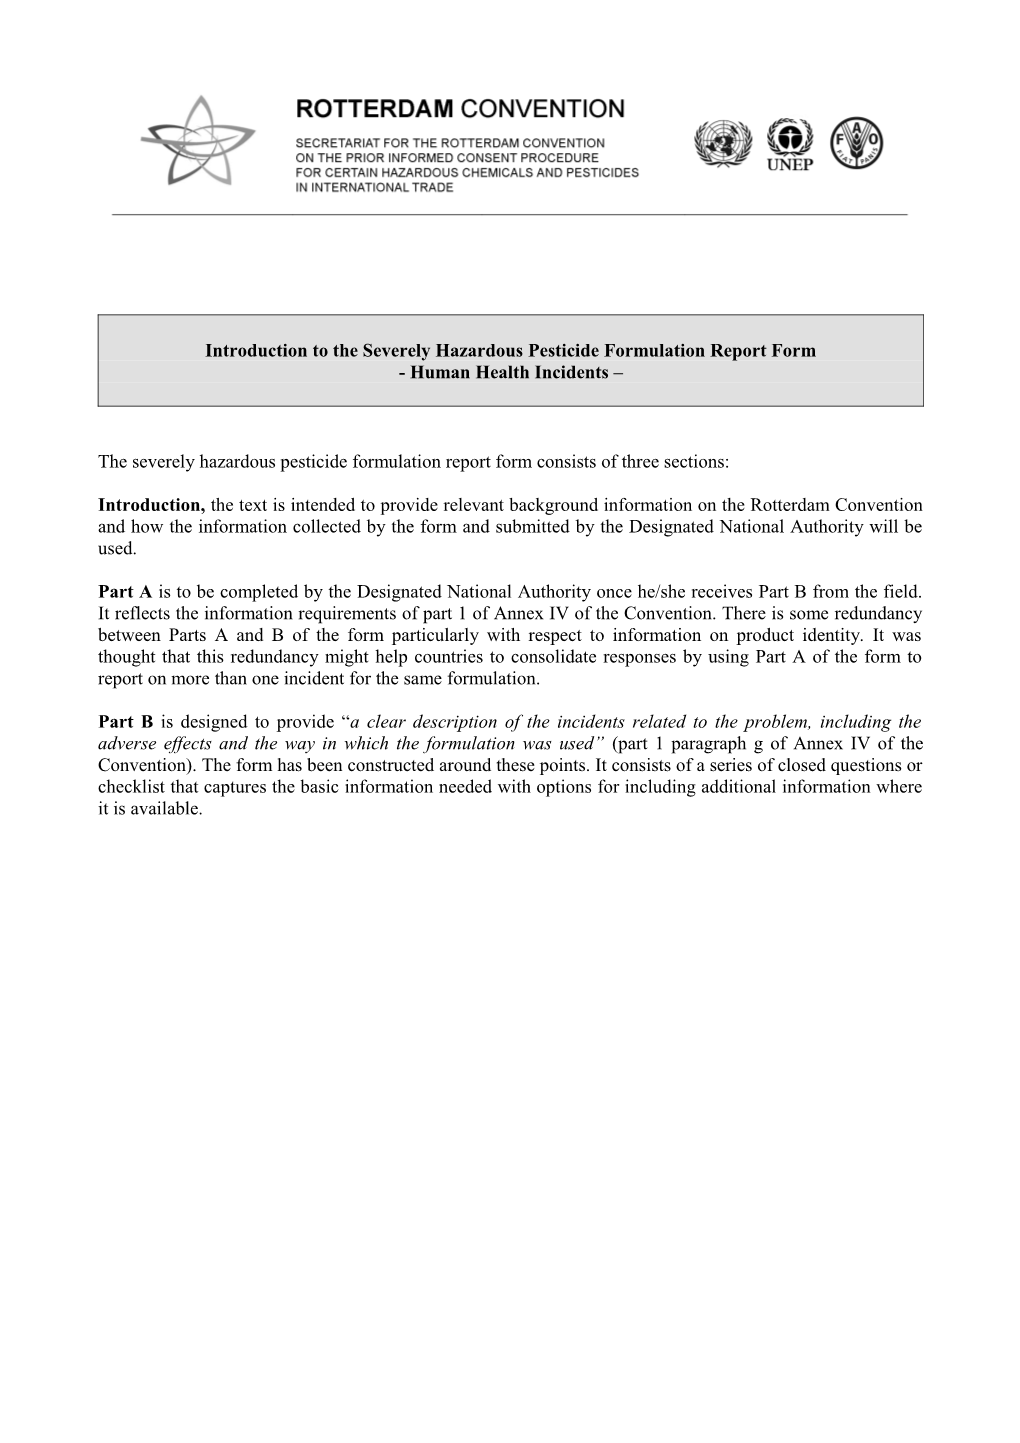 Severely Hazardous Pesticide Formulation Report Form